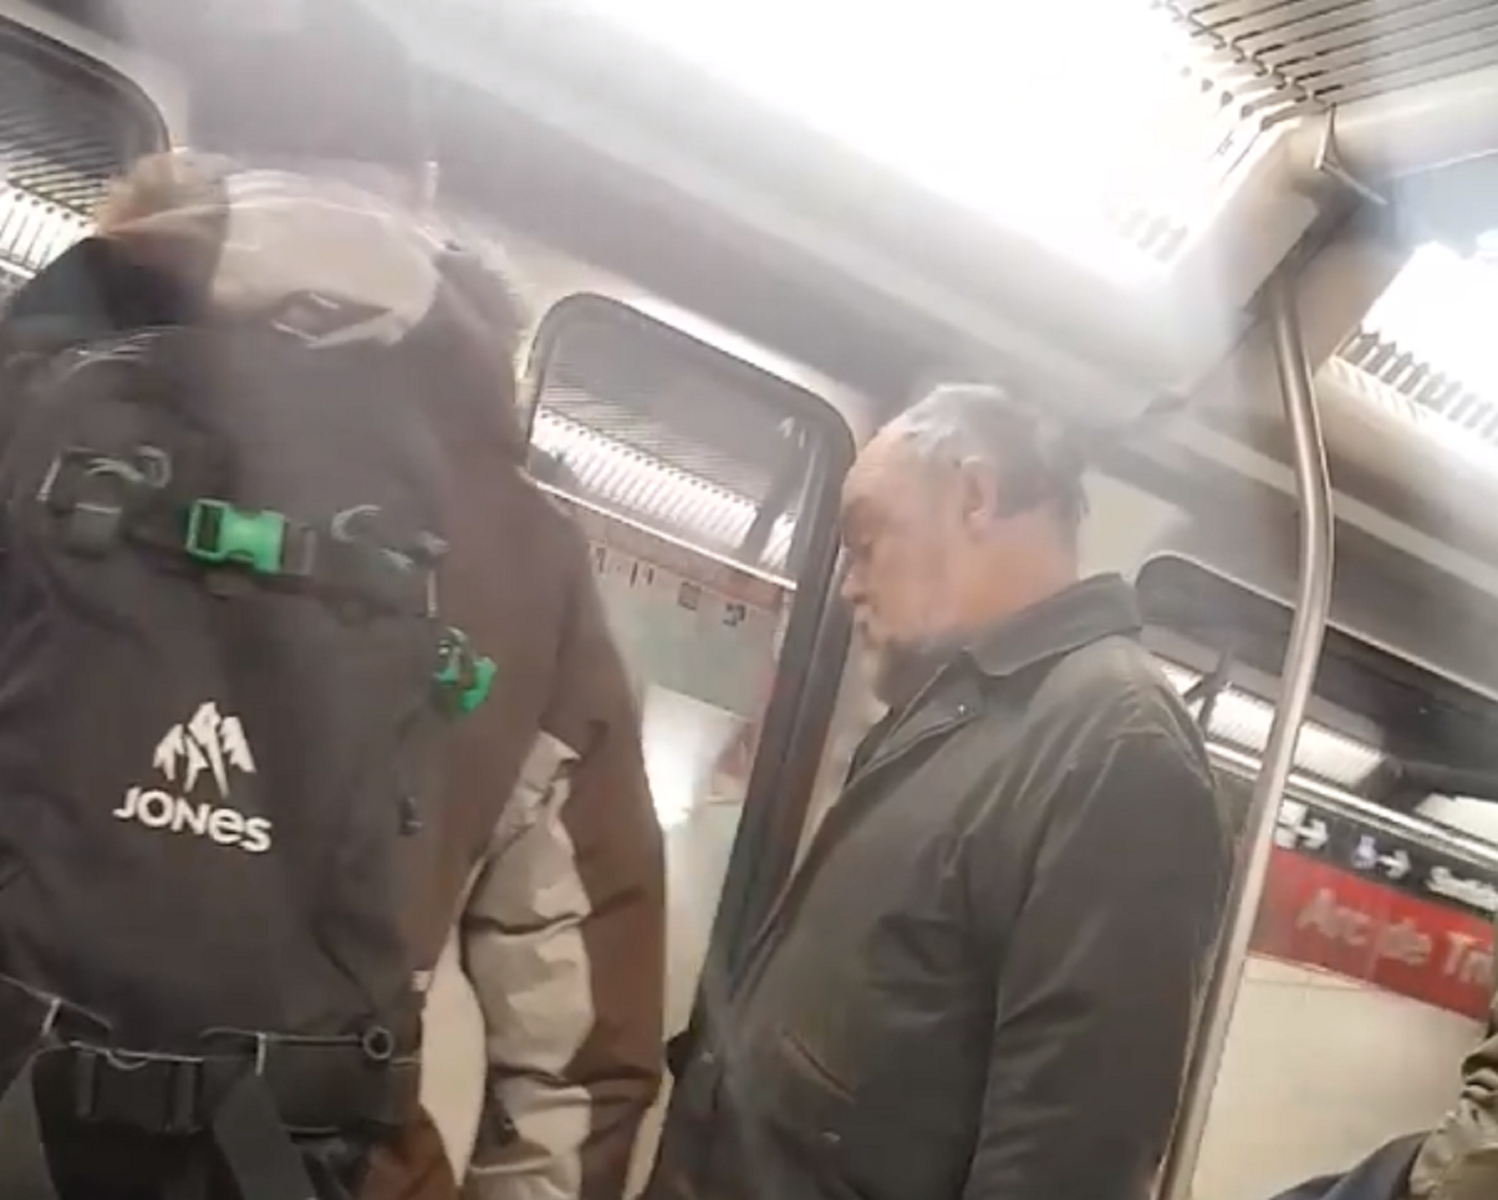 VÍDEO: Agresión racista en el metro de Barcelona: "Ahora os pondrán a caldo"